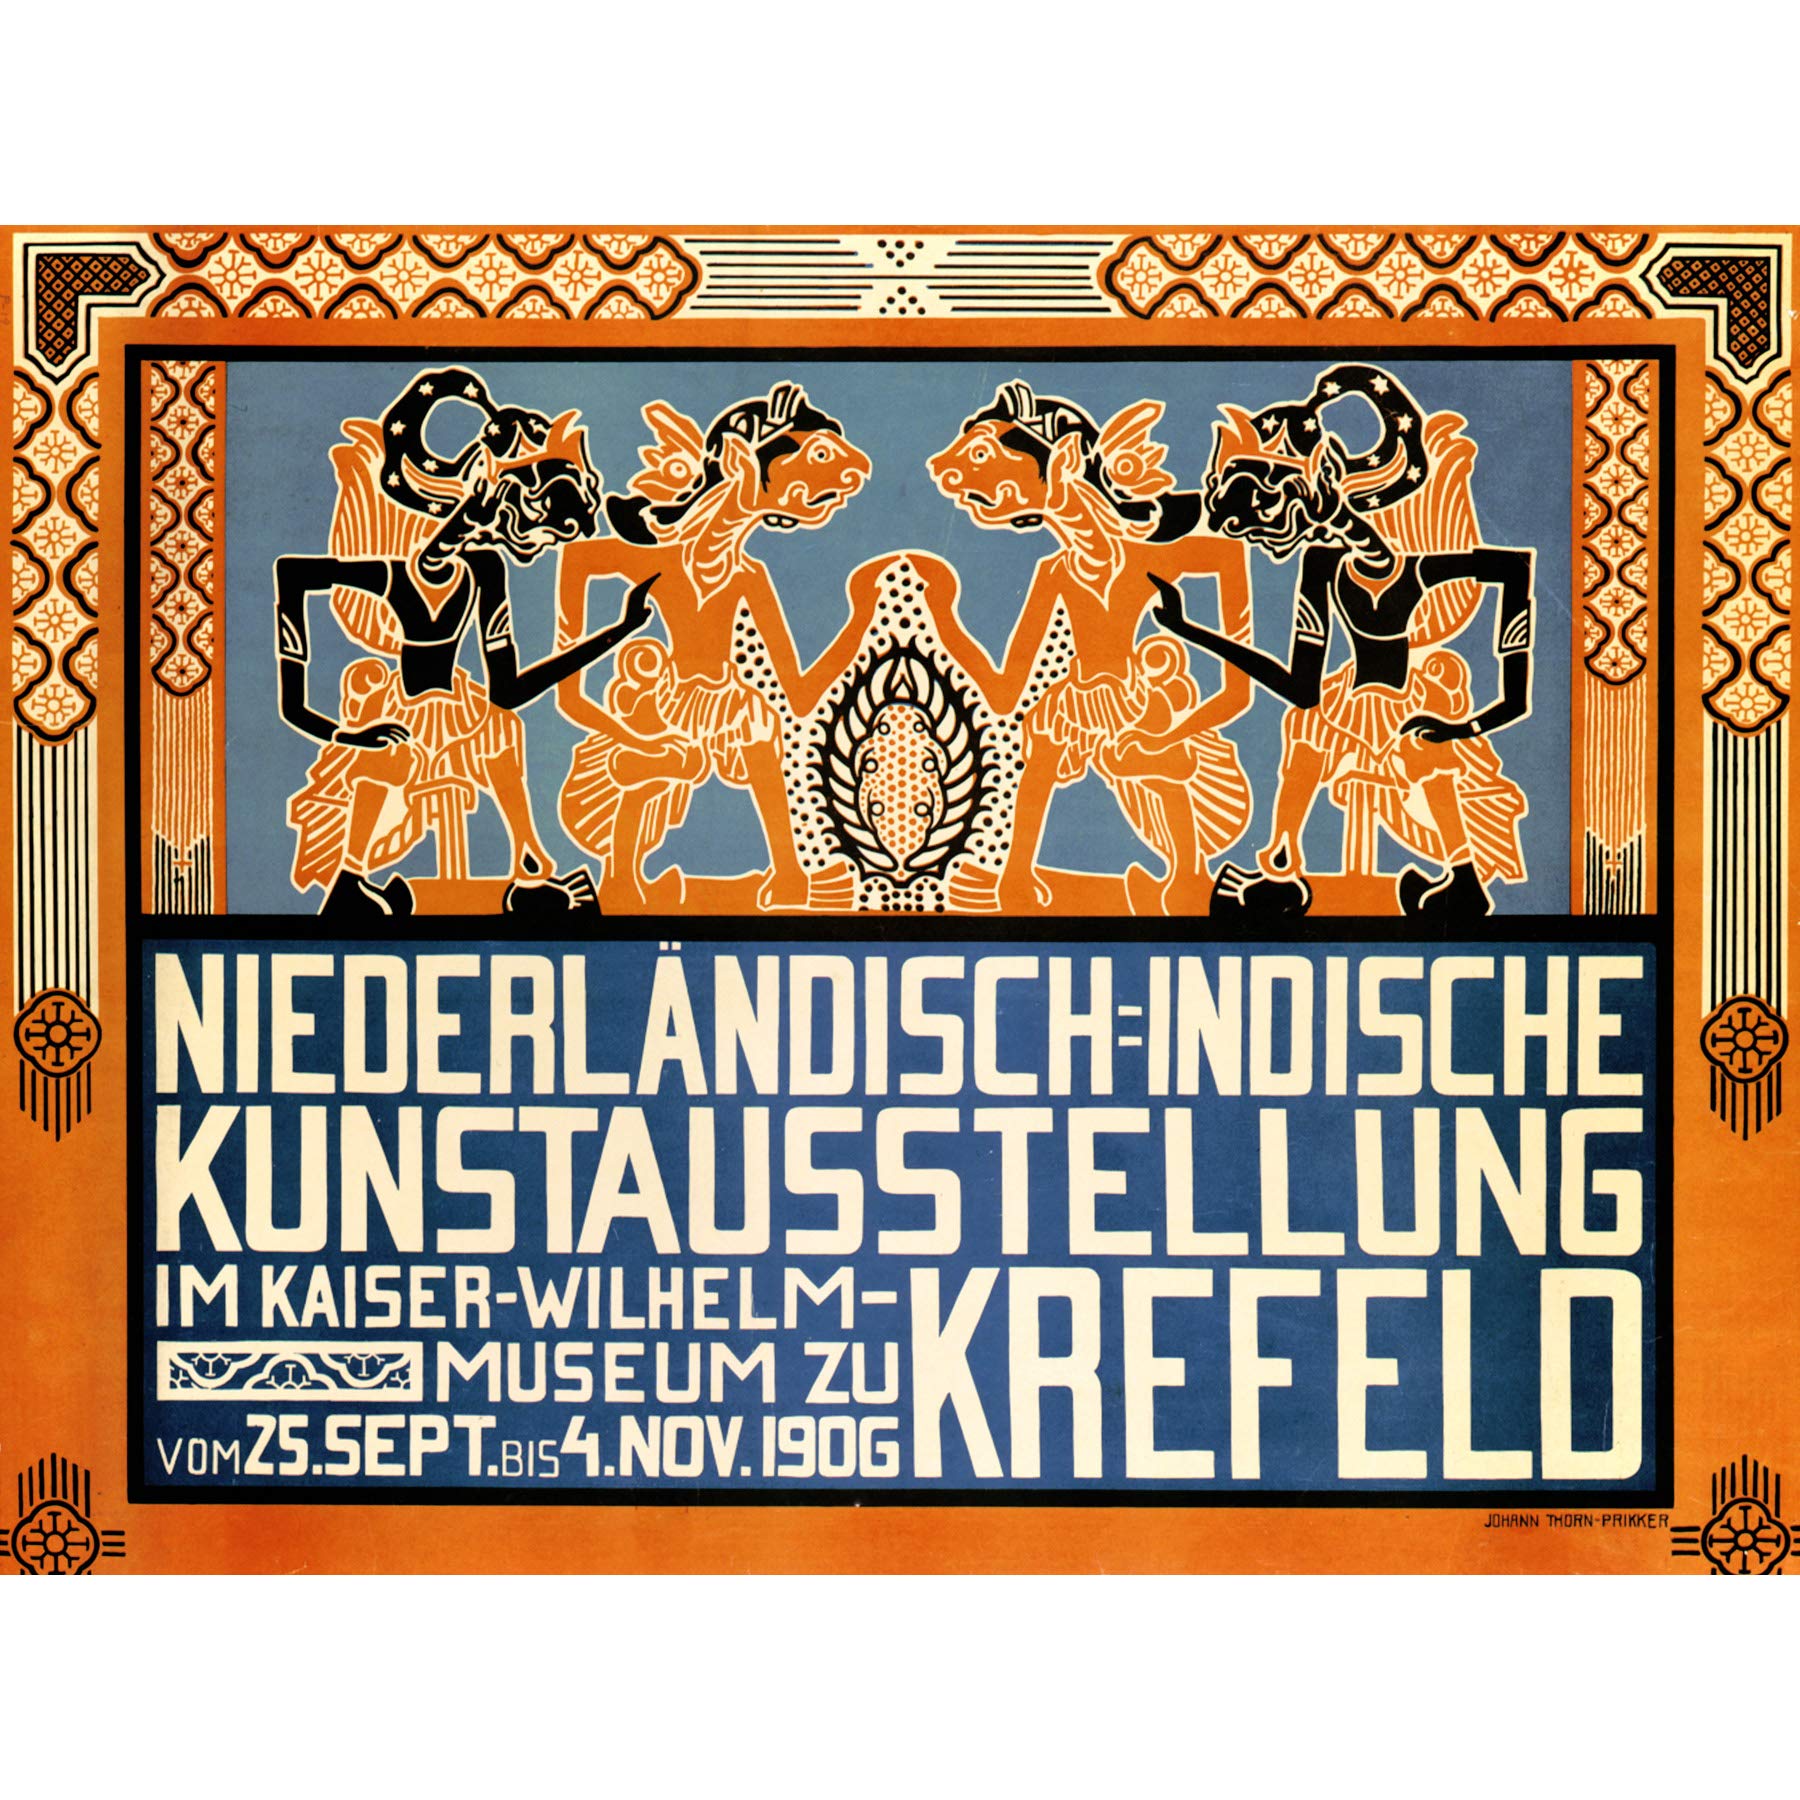 Wee Blue Coo Werbeausstellung Indonesien Niederlande Krefeld Deutschland Leinwanddruck